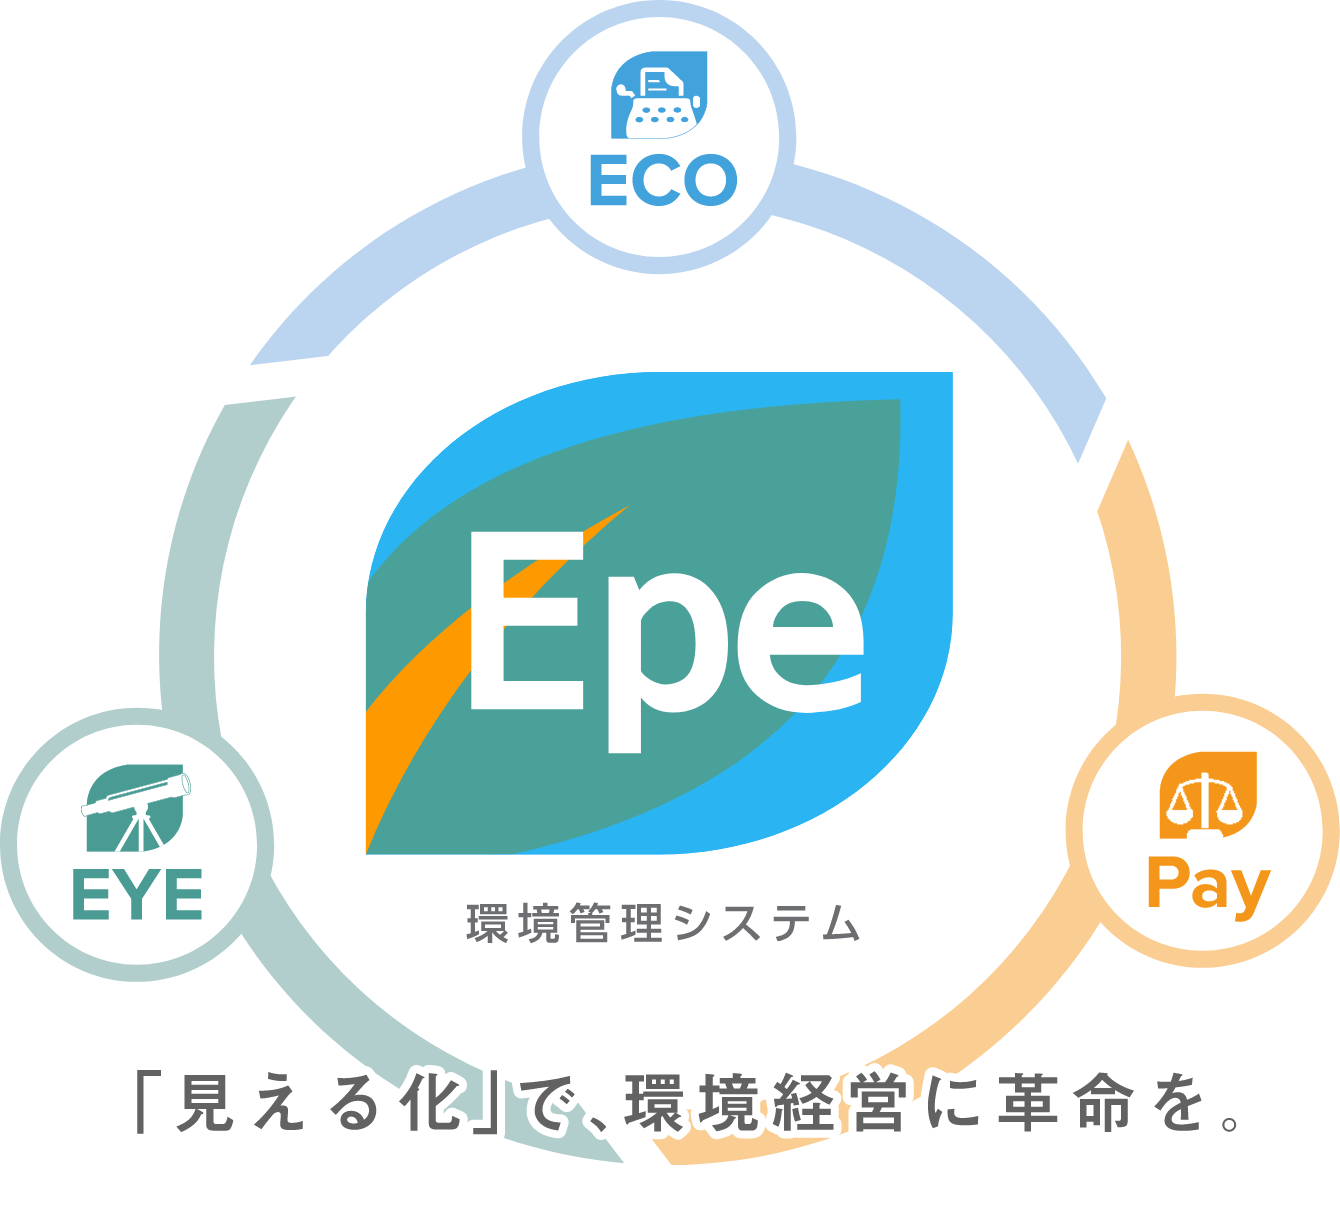 ECO Epe EYE Pay DB 環境管理システム「見える化」で環境経営に革命を。